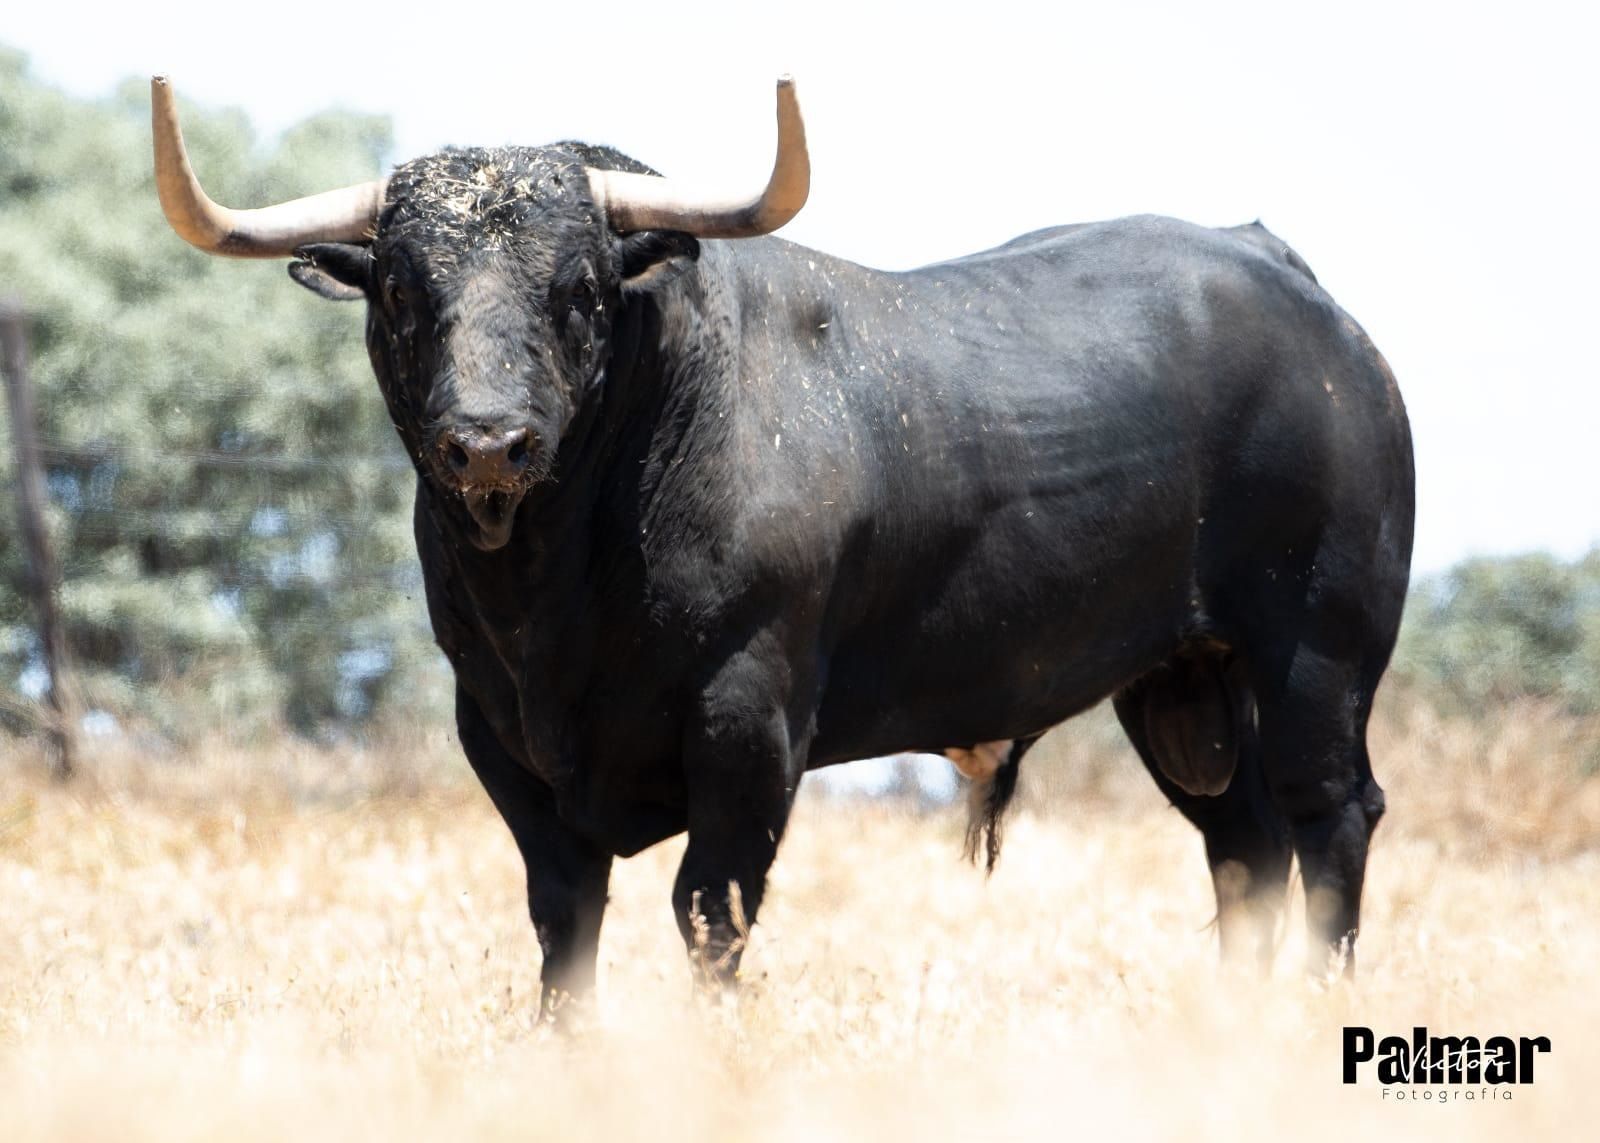 El toro de Martín Lorca destaca por sus hechuras y la arboladura de pitones. Se exhibirá el próximo mes en la plaza portátil de Burriana.